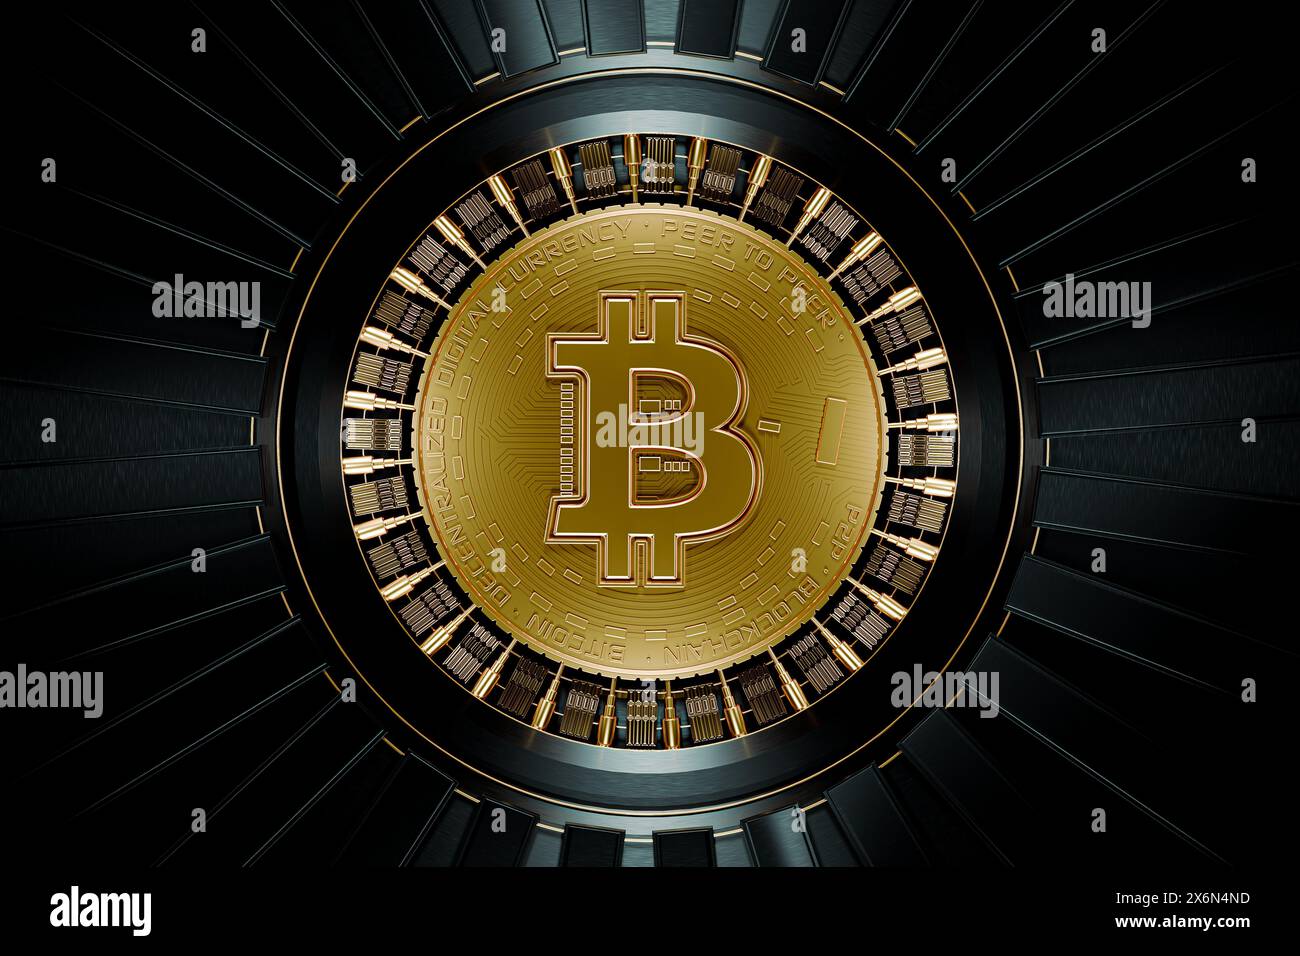 Abstrakte Darstellung der Erstellung eines neuen Bitcoins durch die Community - 3D-Illustration Stockfoto